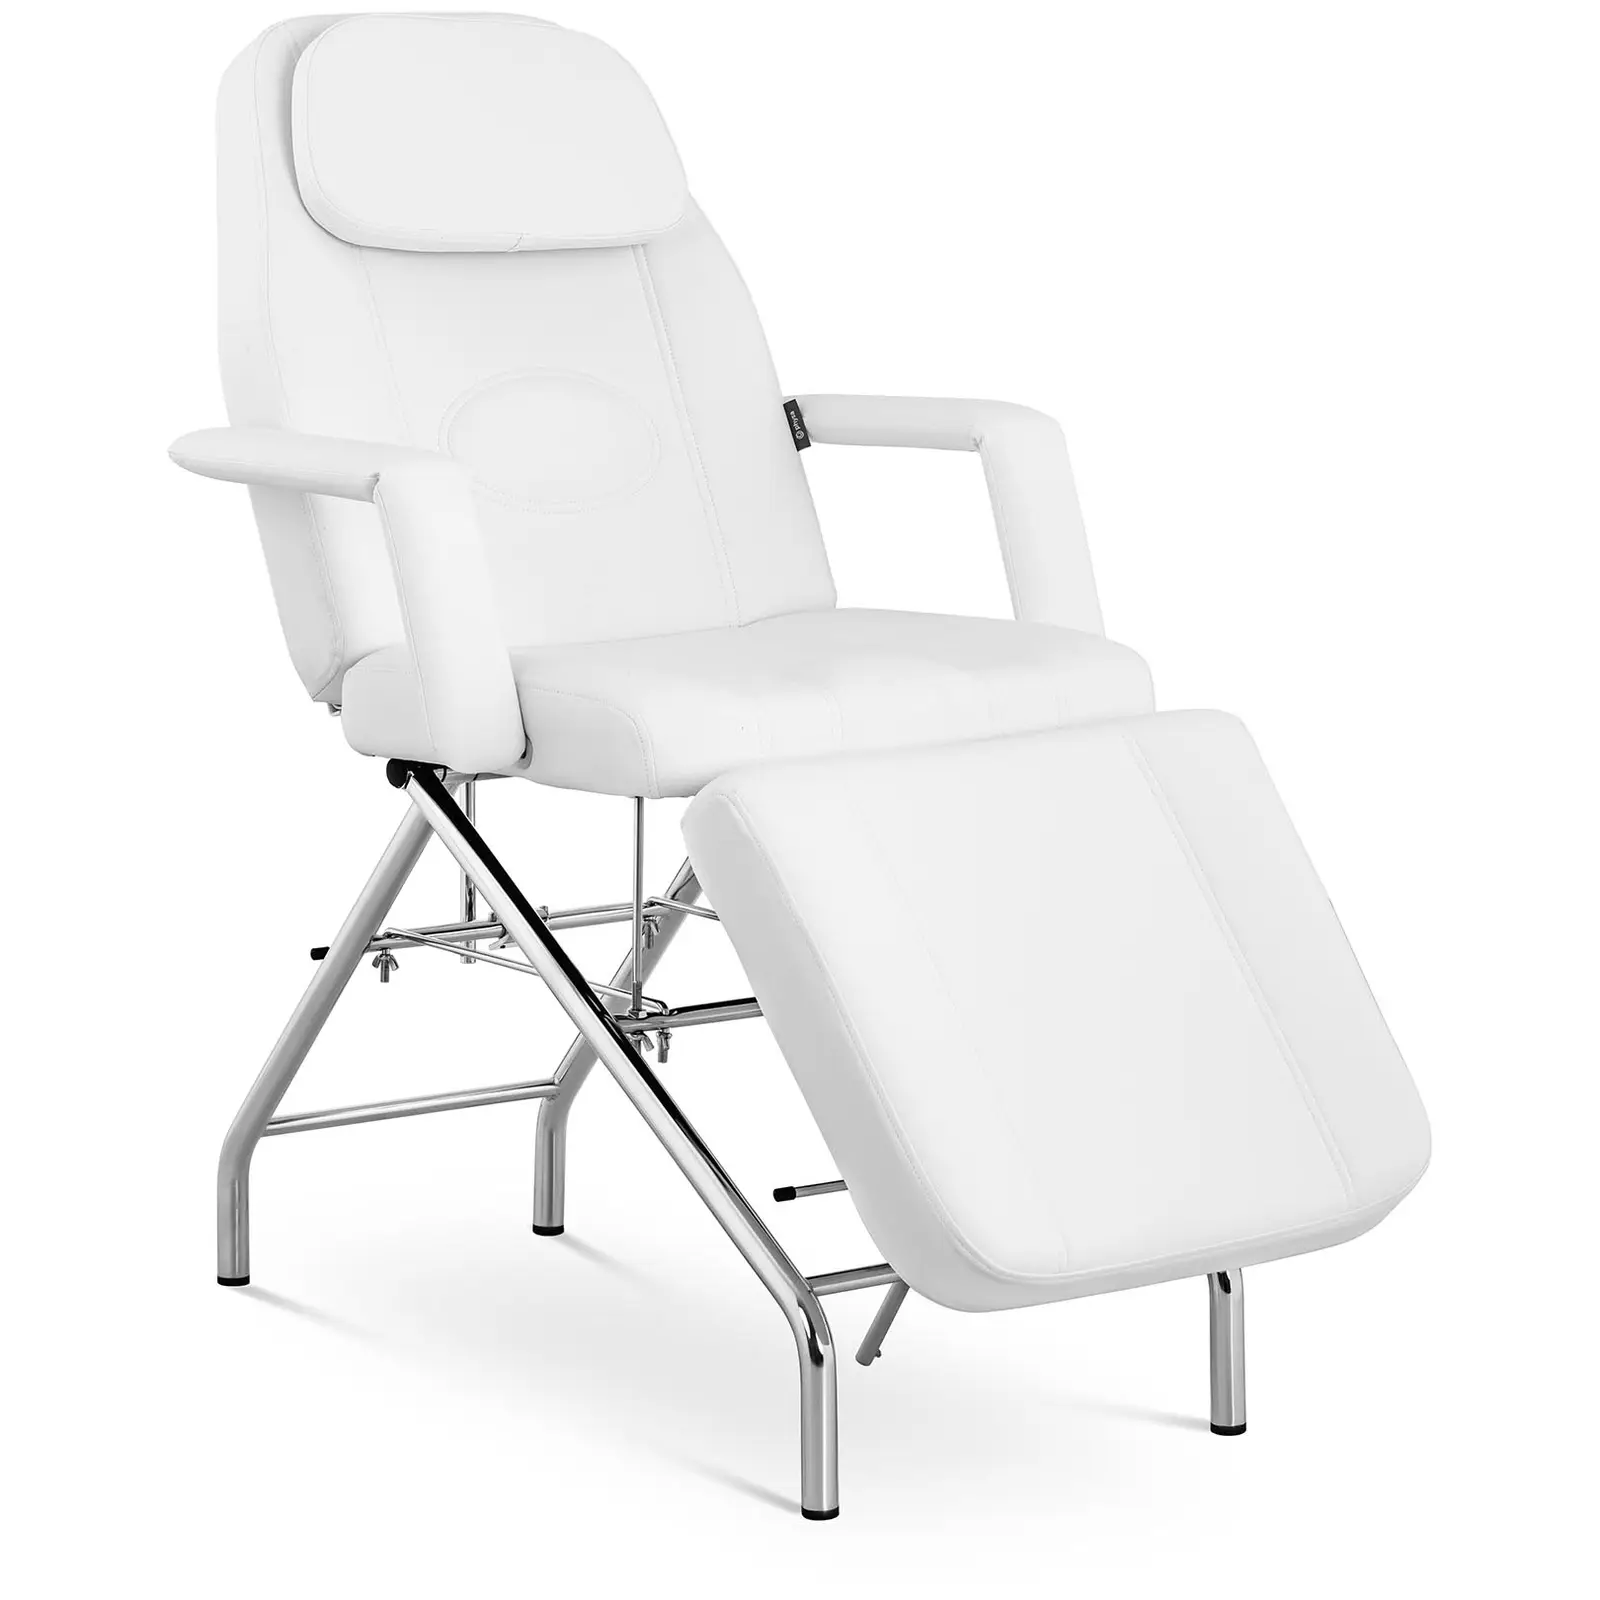 Cadeira para cosmética - 180 x 82.5 x 73 cm - 175 kg - Branco